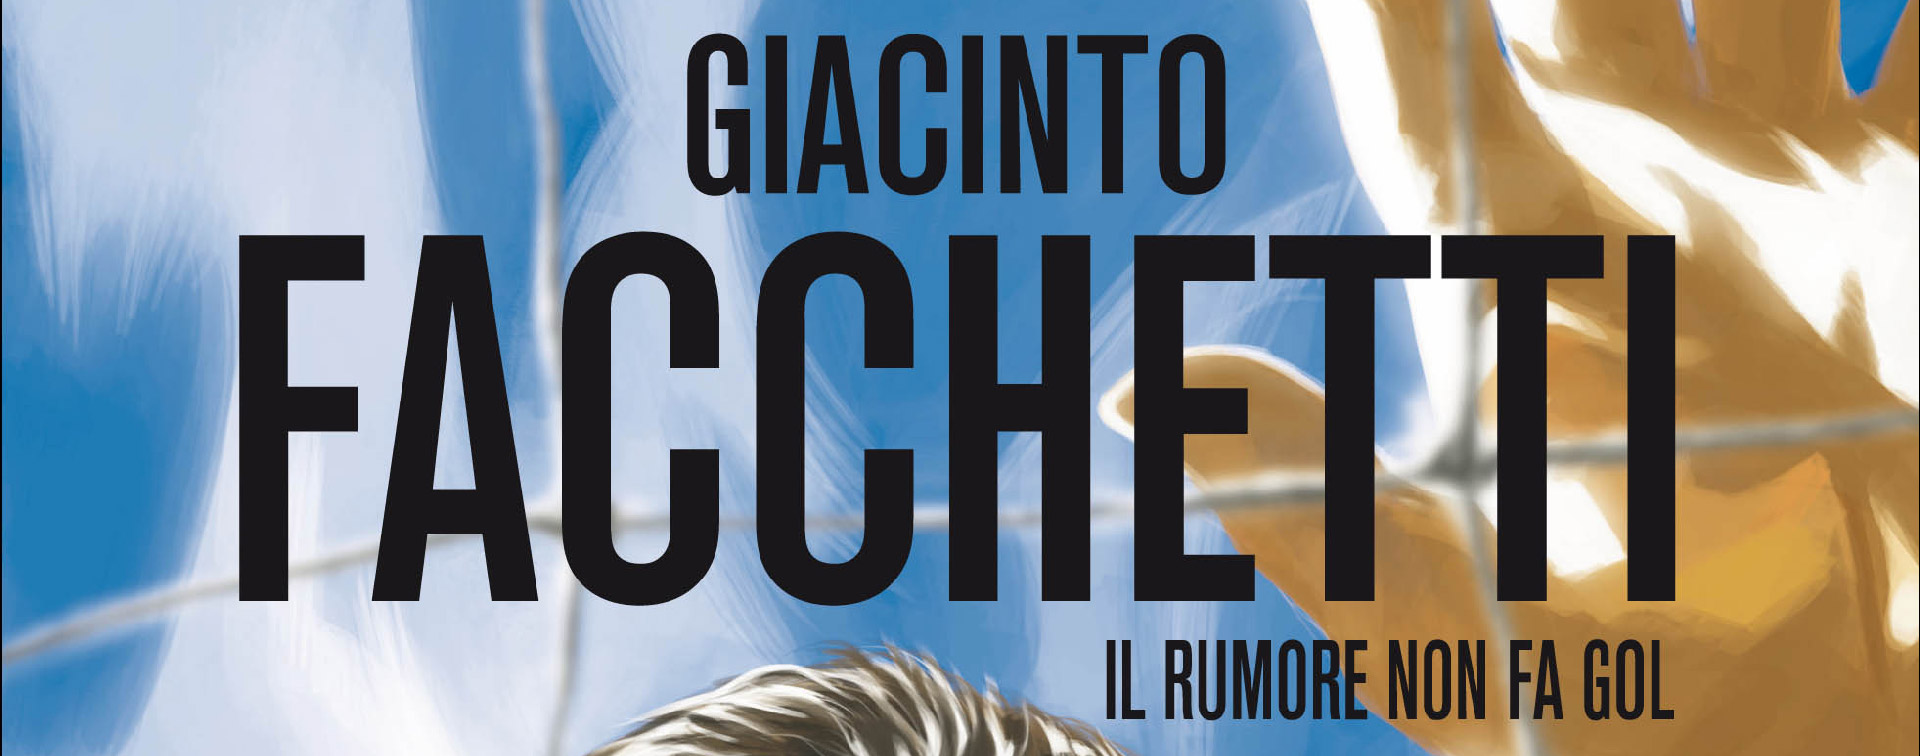 Milano Da Leggere: scaricabile sino al 30 giugno “Giacinto Facchetti. Il rumore del gol”